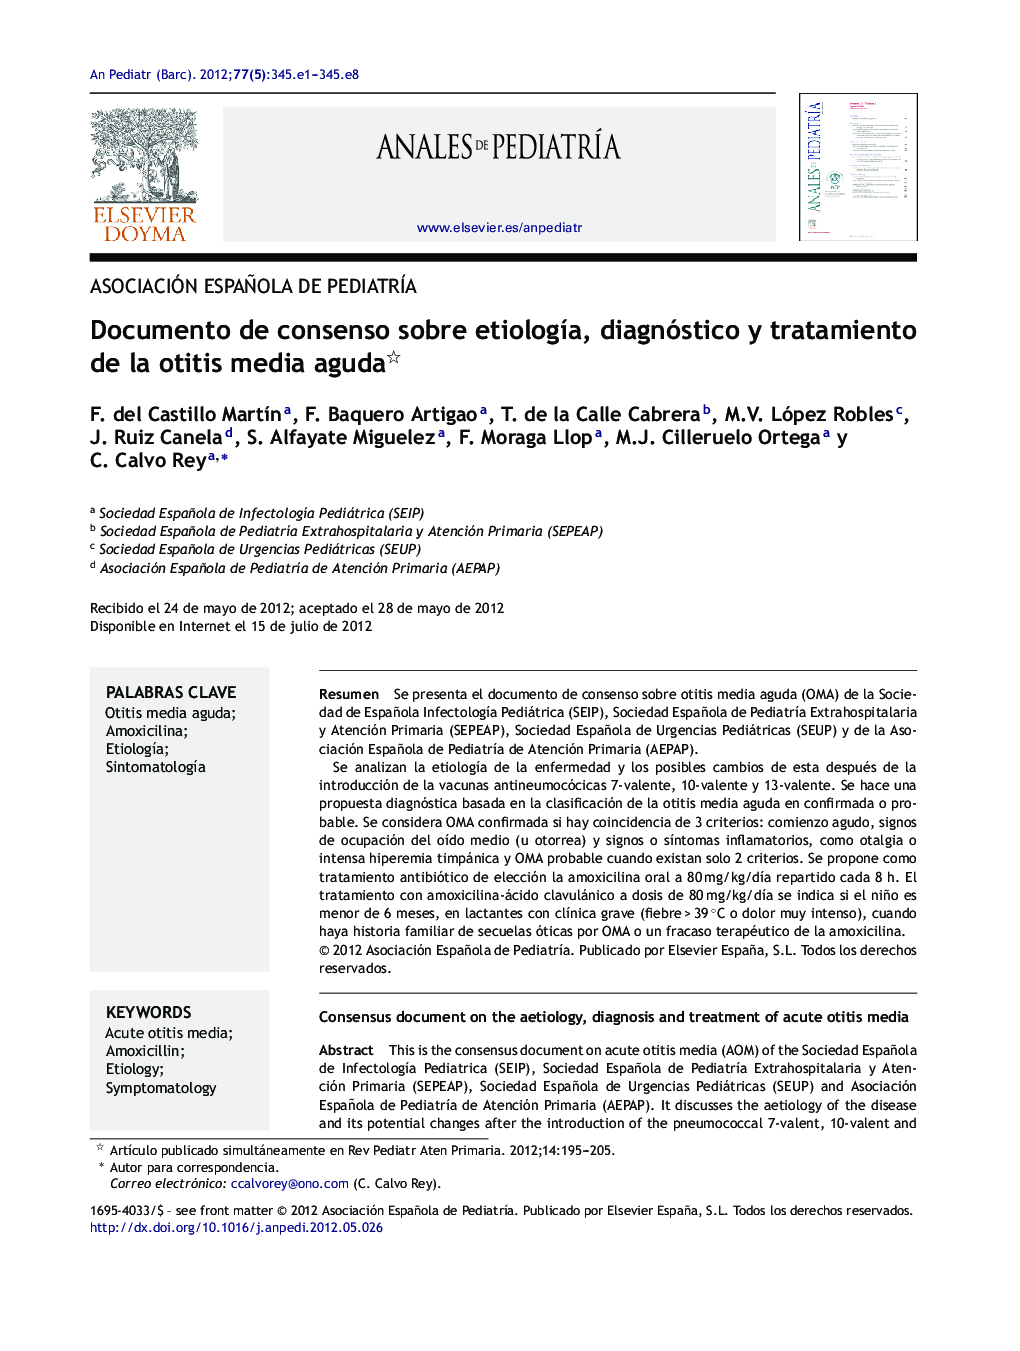 Documento de consenso sobre etiologÃ­a, diagnóstico y tratamiento de la otitis media aguda